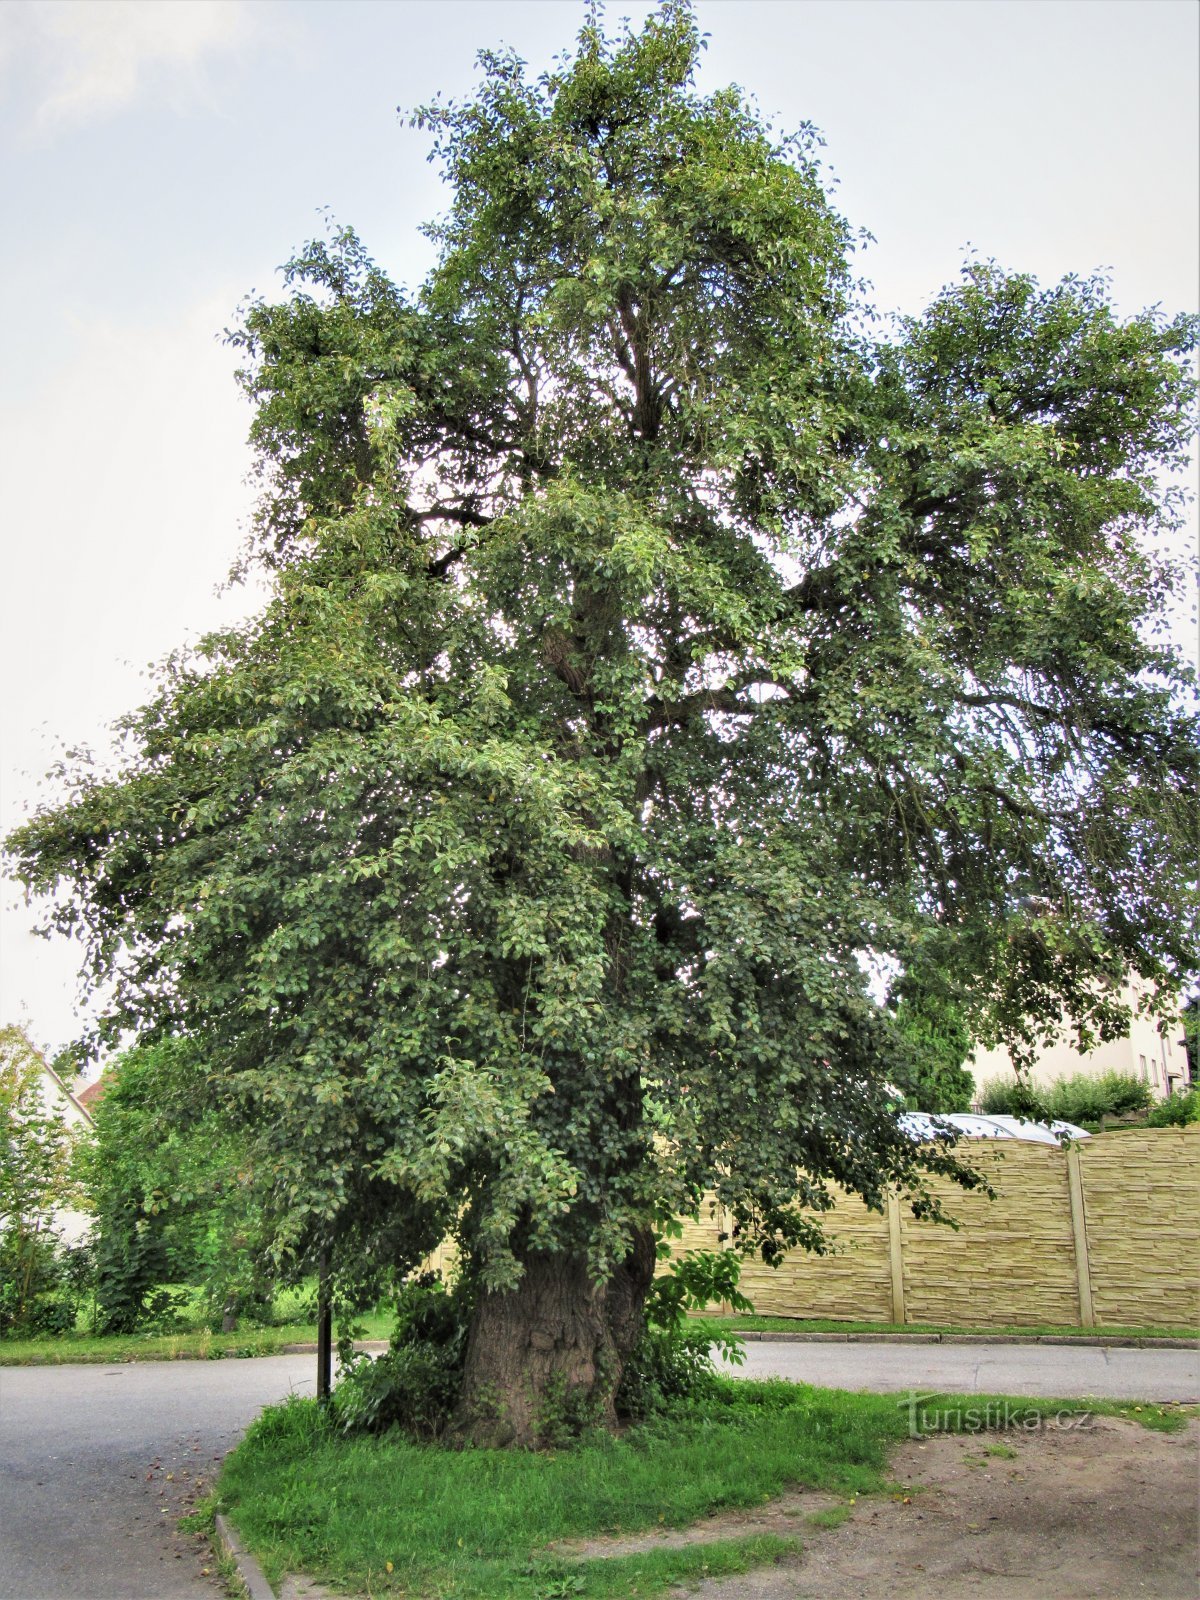 Memorial pear tree